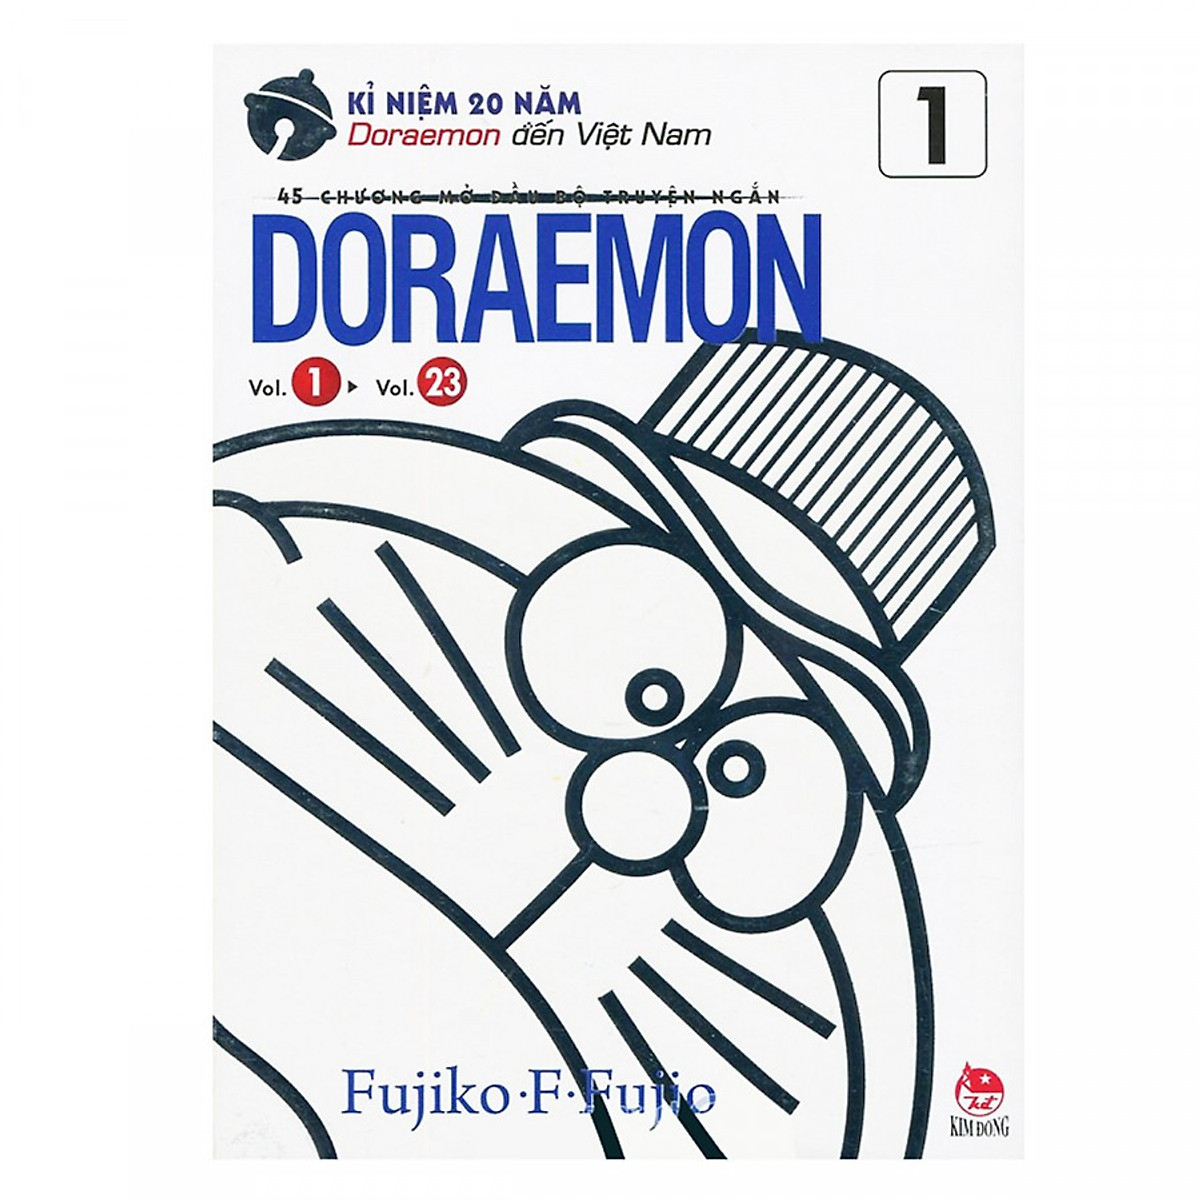 Doraemon - 45 Chương Mở Đầu Bộ Truyện Ngắn - Tập 1 (Kỉ Niệm 20 Năm Doraemon Đến Việt Nam) (Tái Bản)